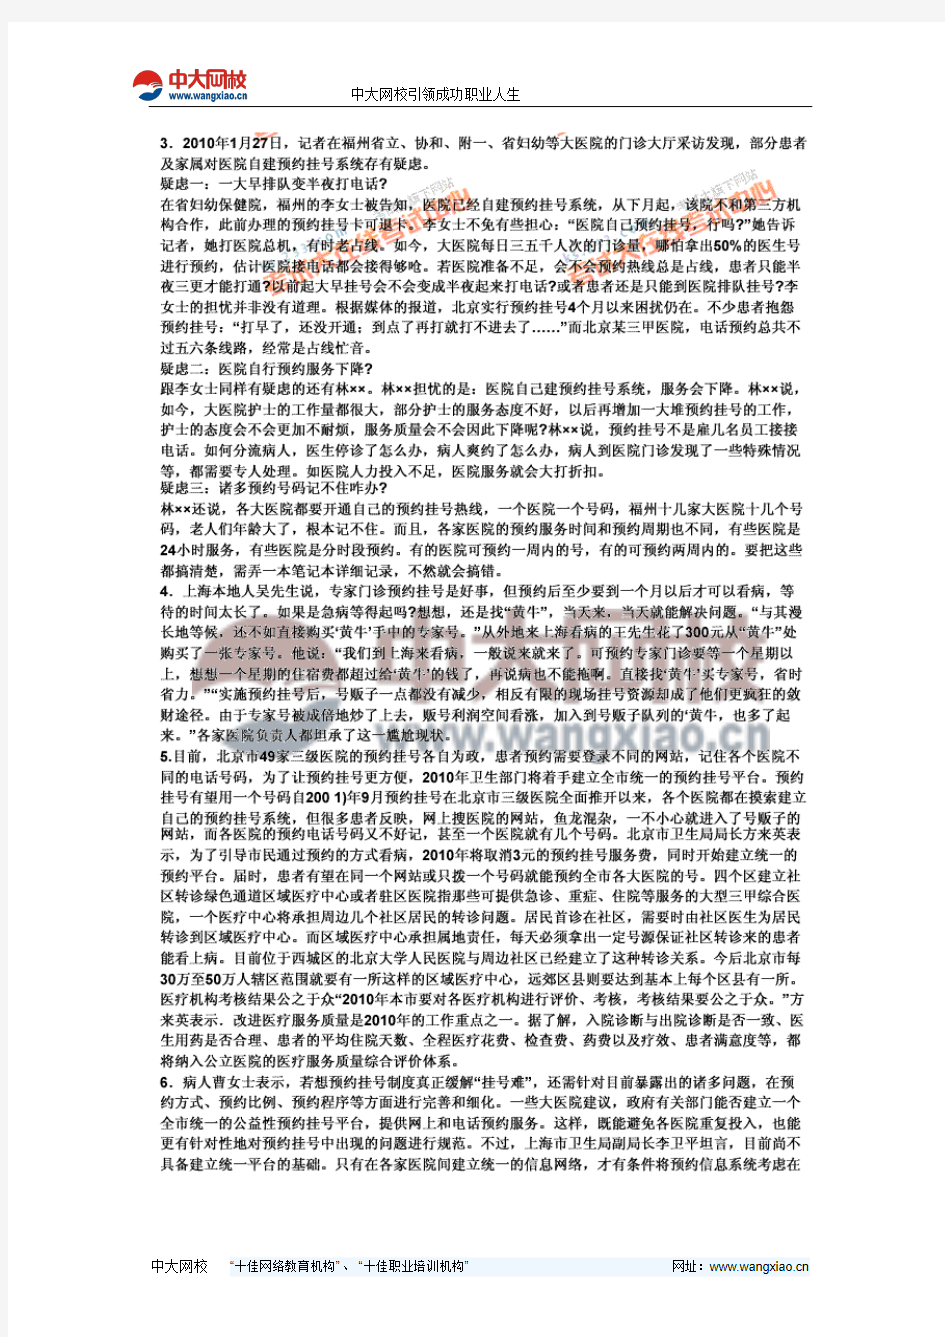 2011年深圳市公务员考试《申论》标准预测试卷(1)-中大网校